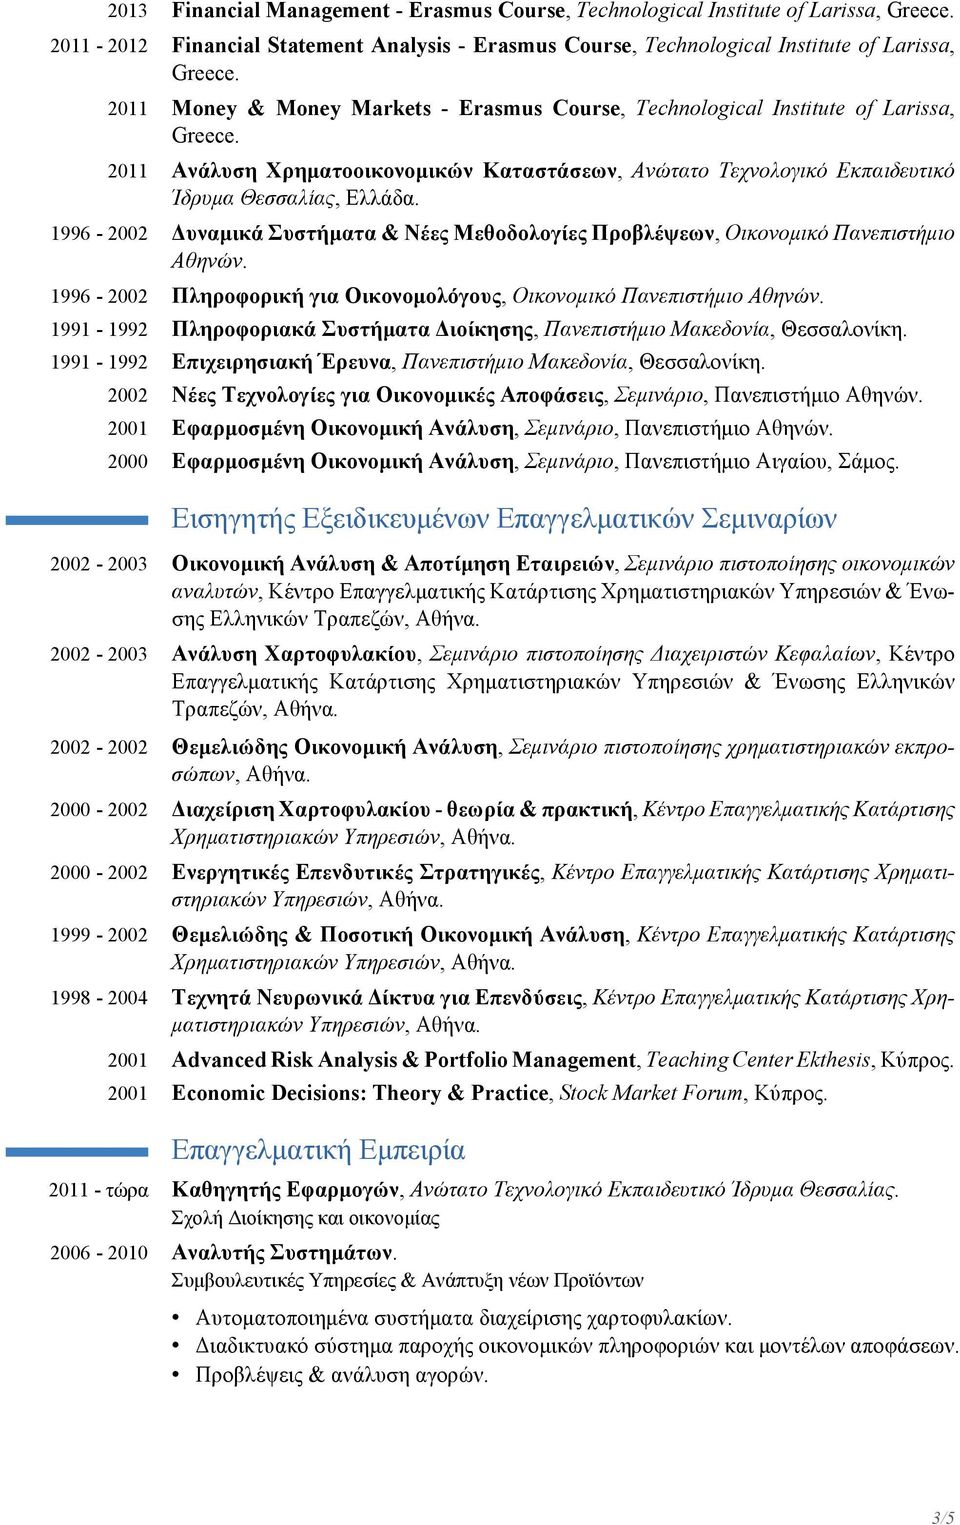 1996-2002 Δυναμικά Συστήματα & Νέες Μεθοδολογίες Προβλέψεων, Οικονομικό Πανεπιστήμιο Αθηνών. 1996-2002 Πληροφορική για Οικονομολόγους, Οικονομικό Πανεπιστήμιο Αθηνών.